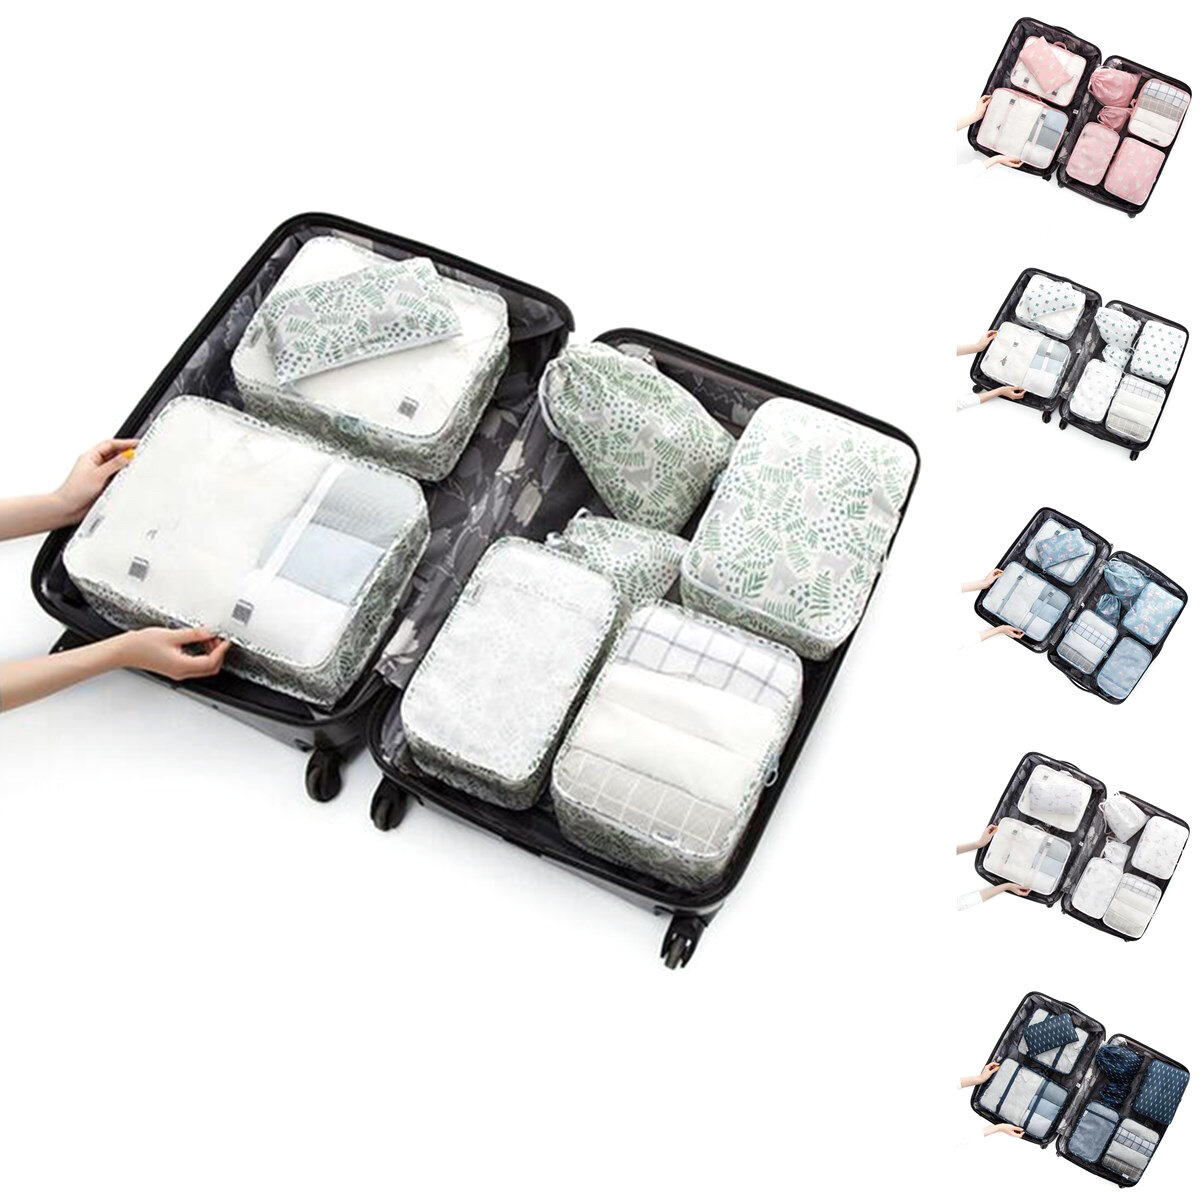 8 Teile / satz Reisegepäck Organizer Aufbewahrungsbeutel Koffer Packtaschen